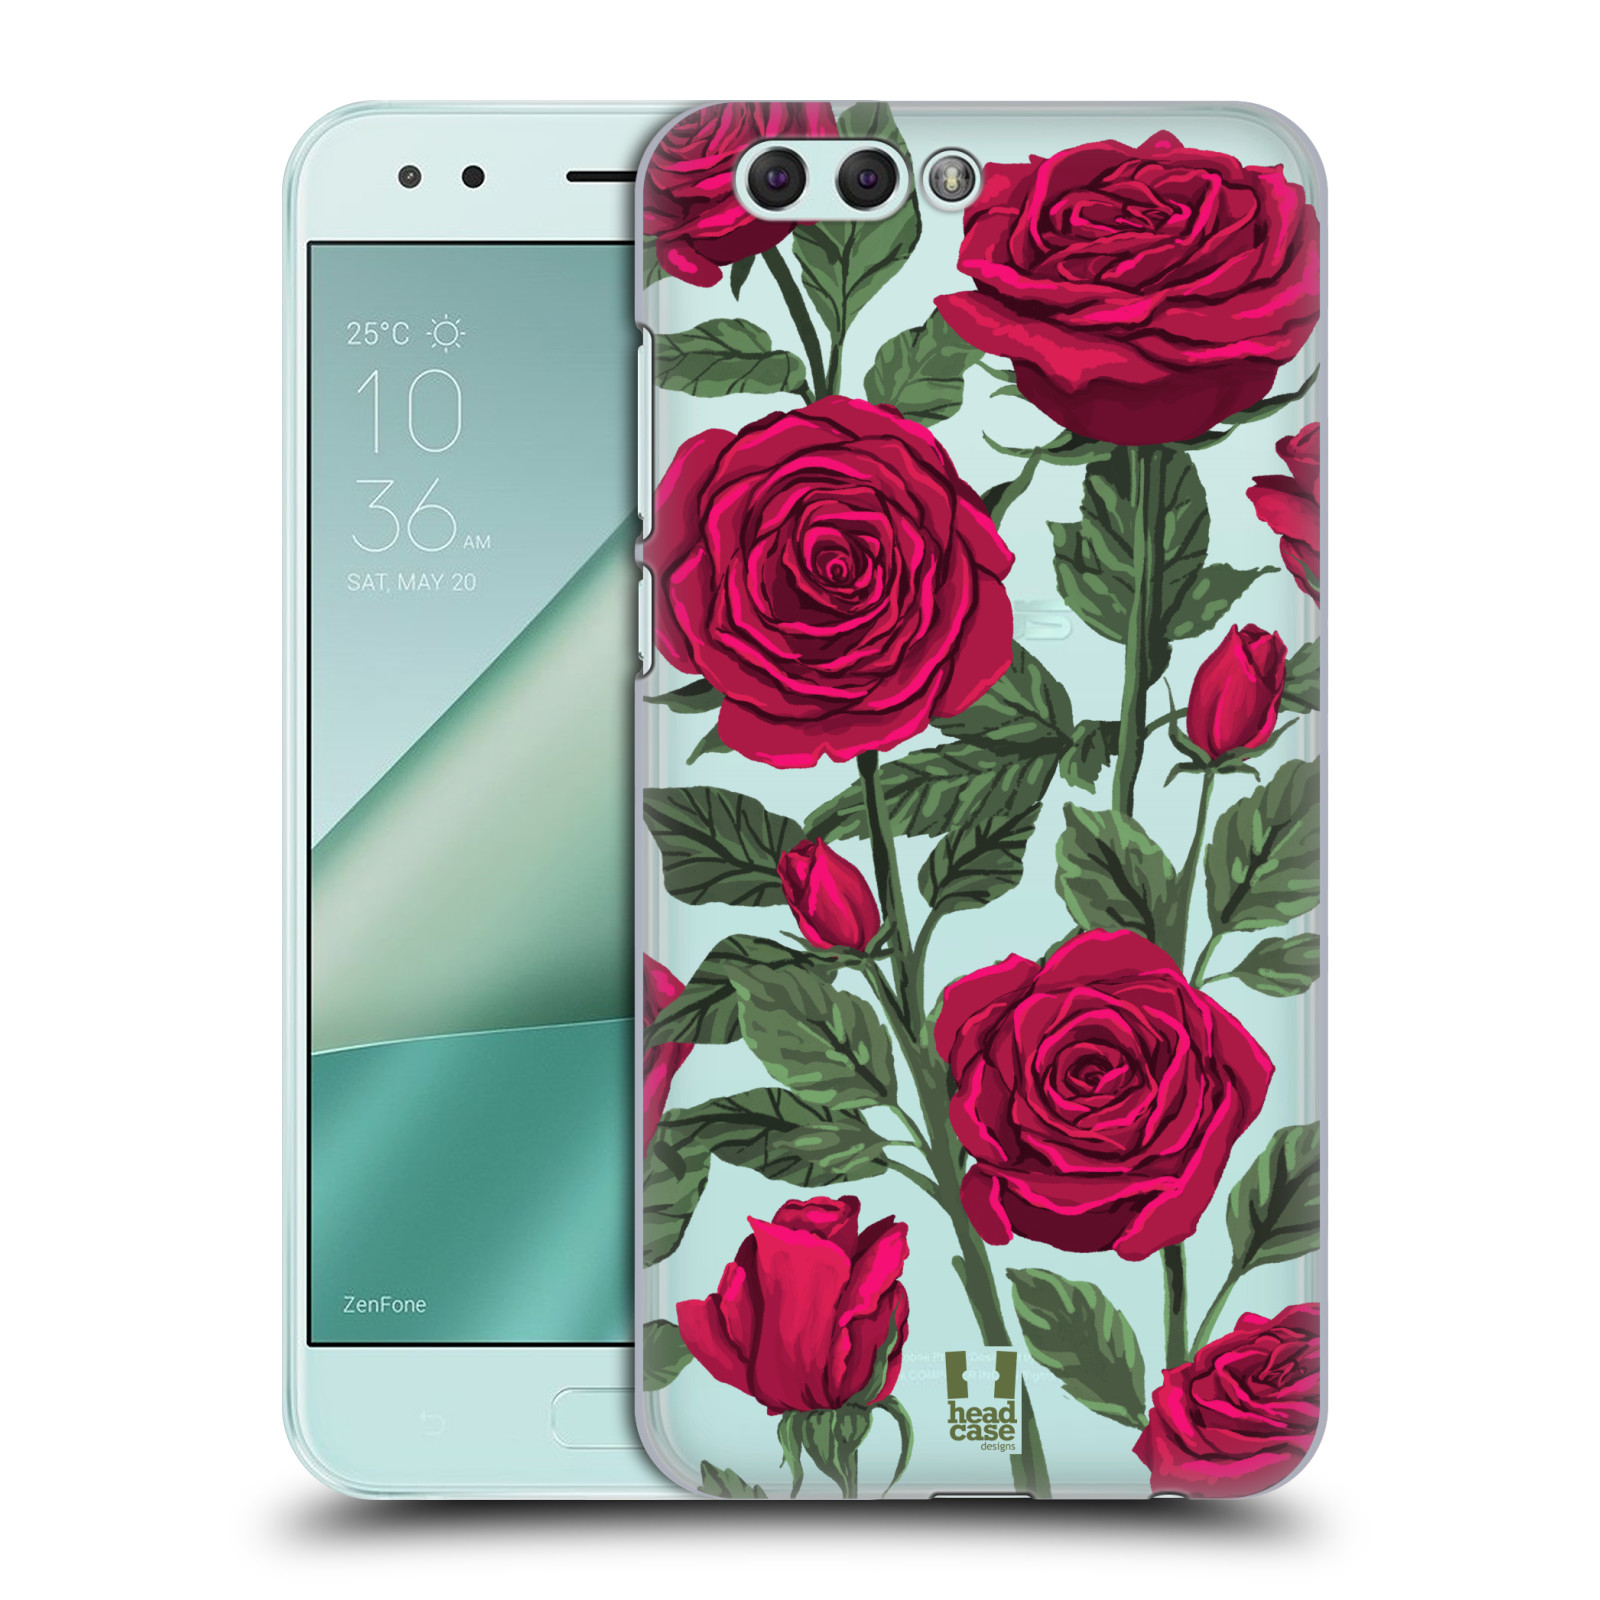 Pouzdro na mobil ASUS ZENFONE 4 ZE554KL - HEAD CASE - květina růže